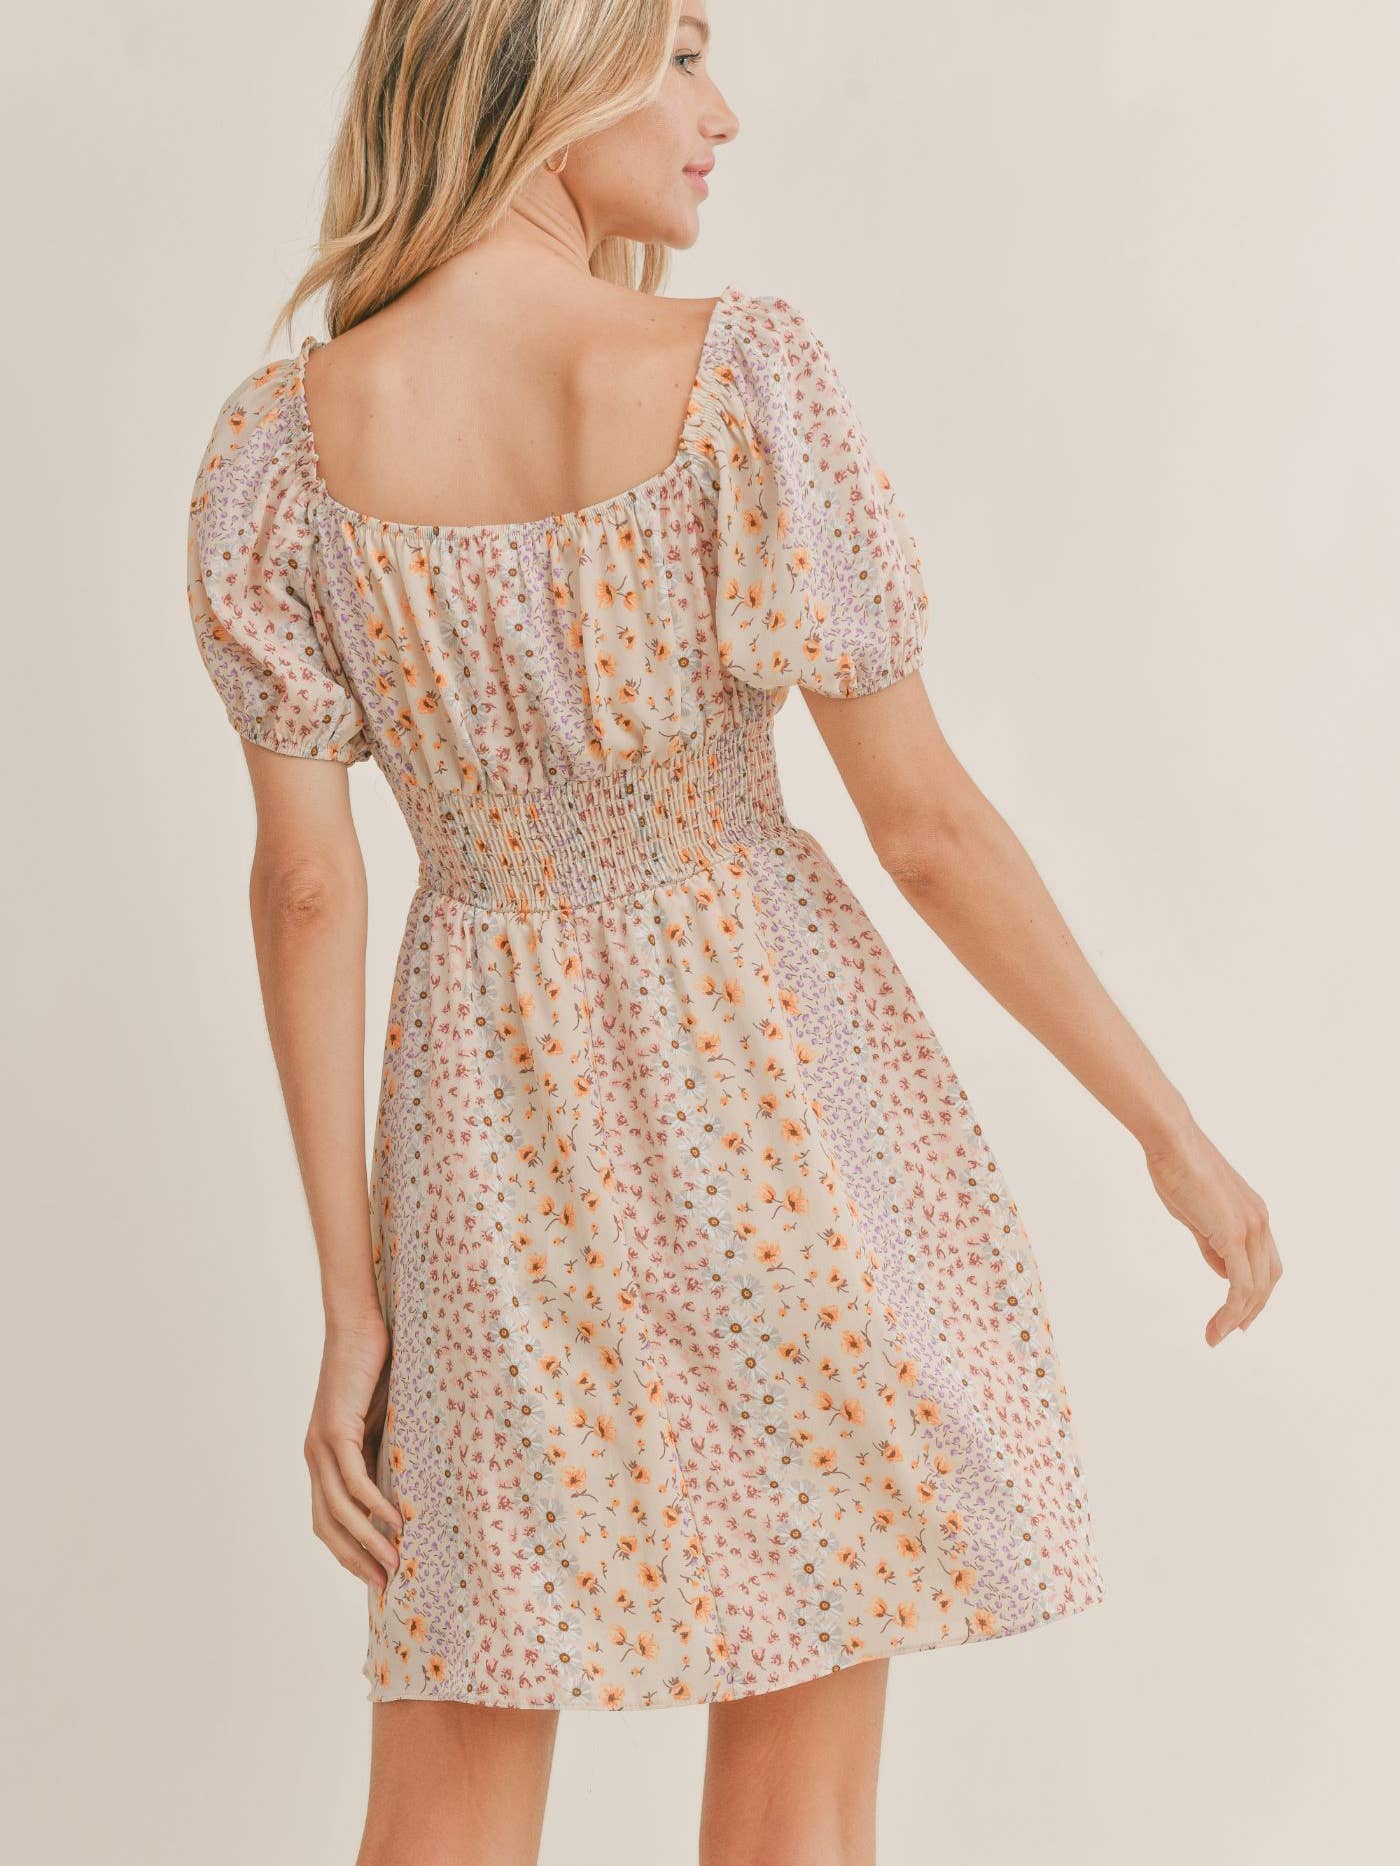 Montauk Sunrise Mini Dress: CREAM MULTI